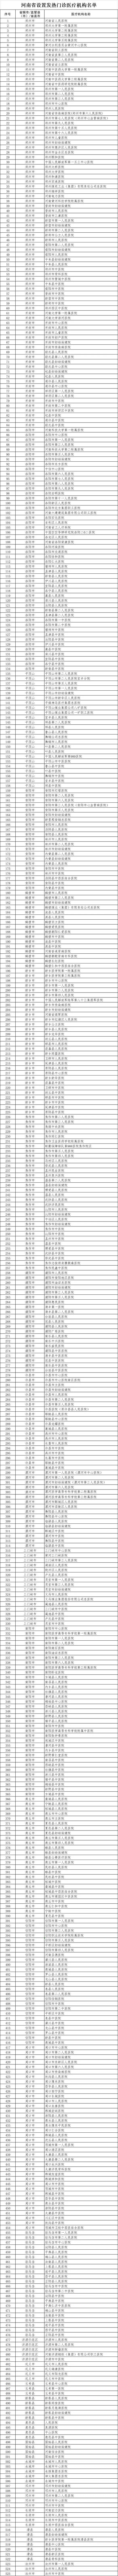 河南最新公布525所新型肺炎医疗救治定点医院